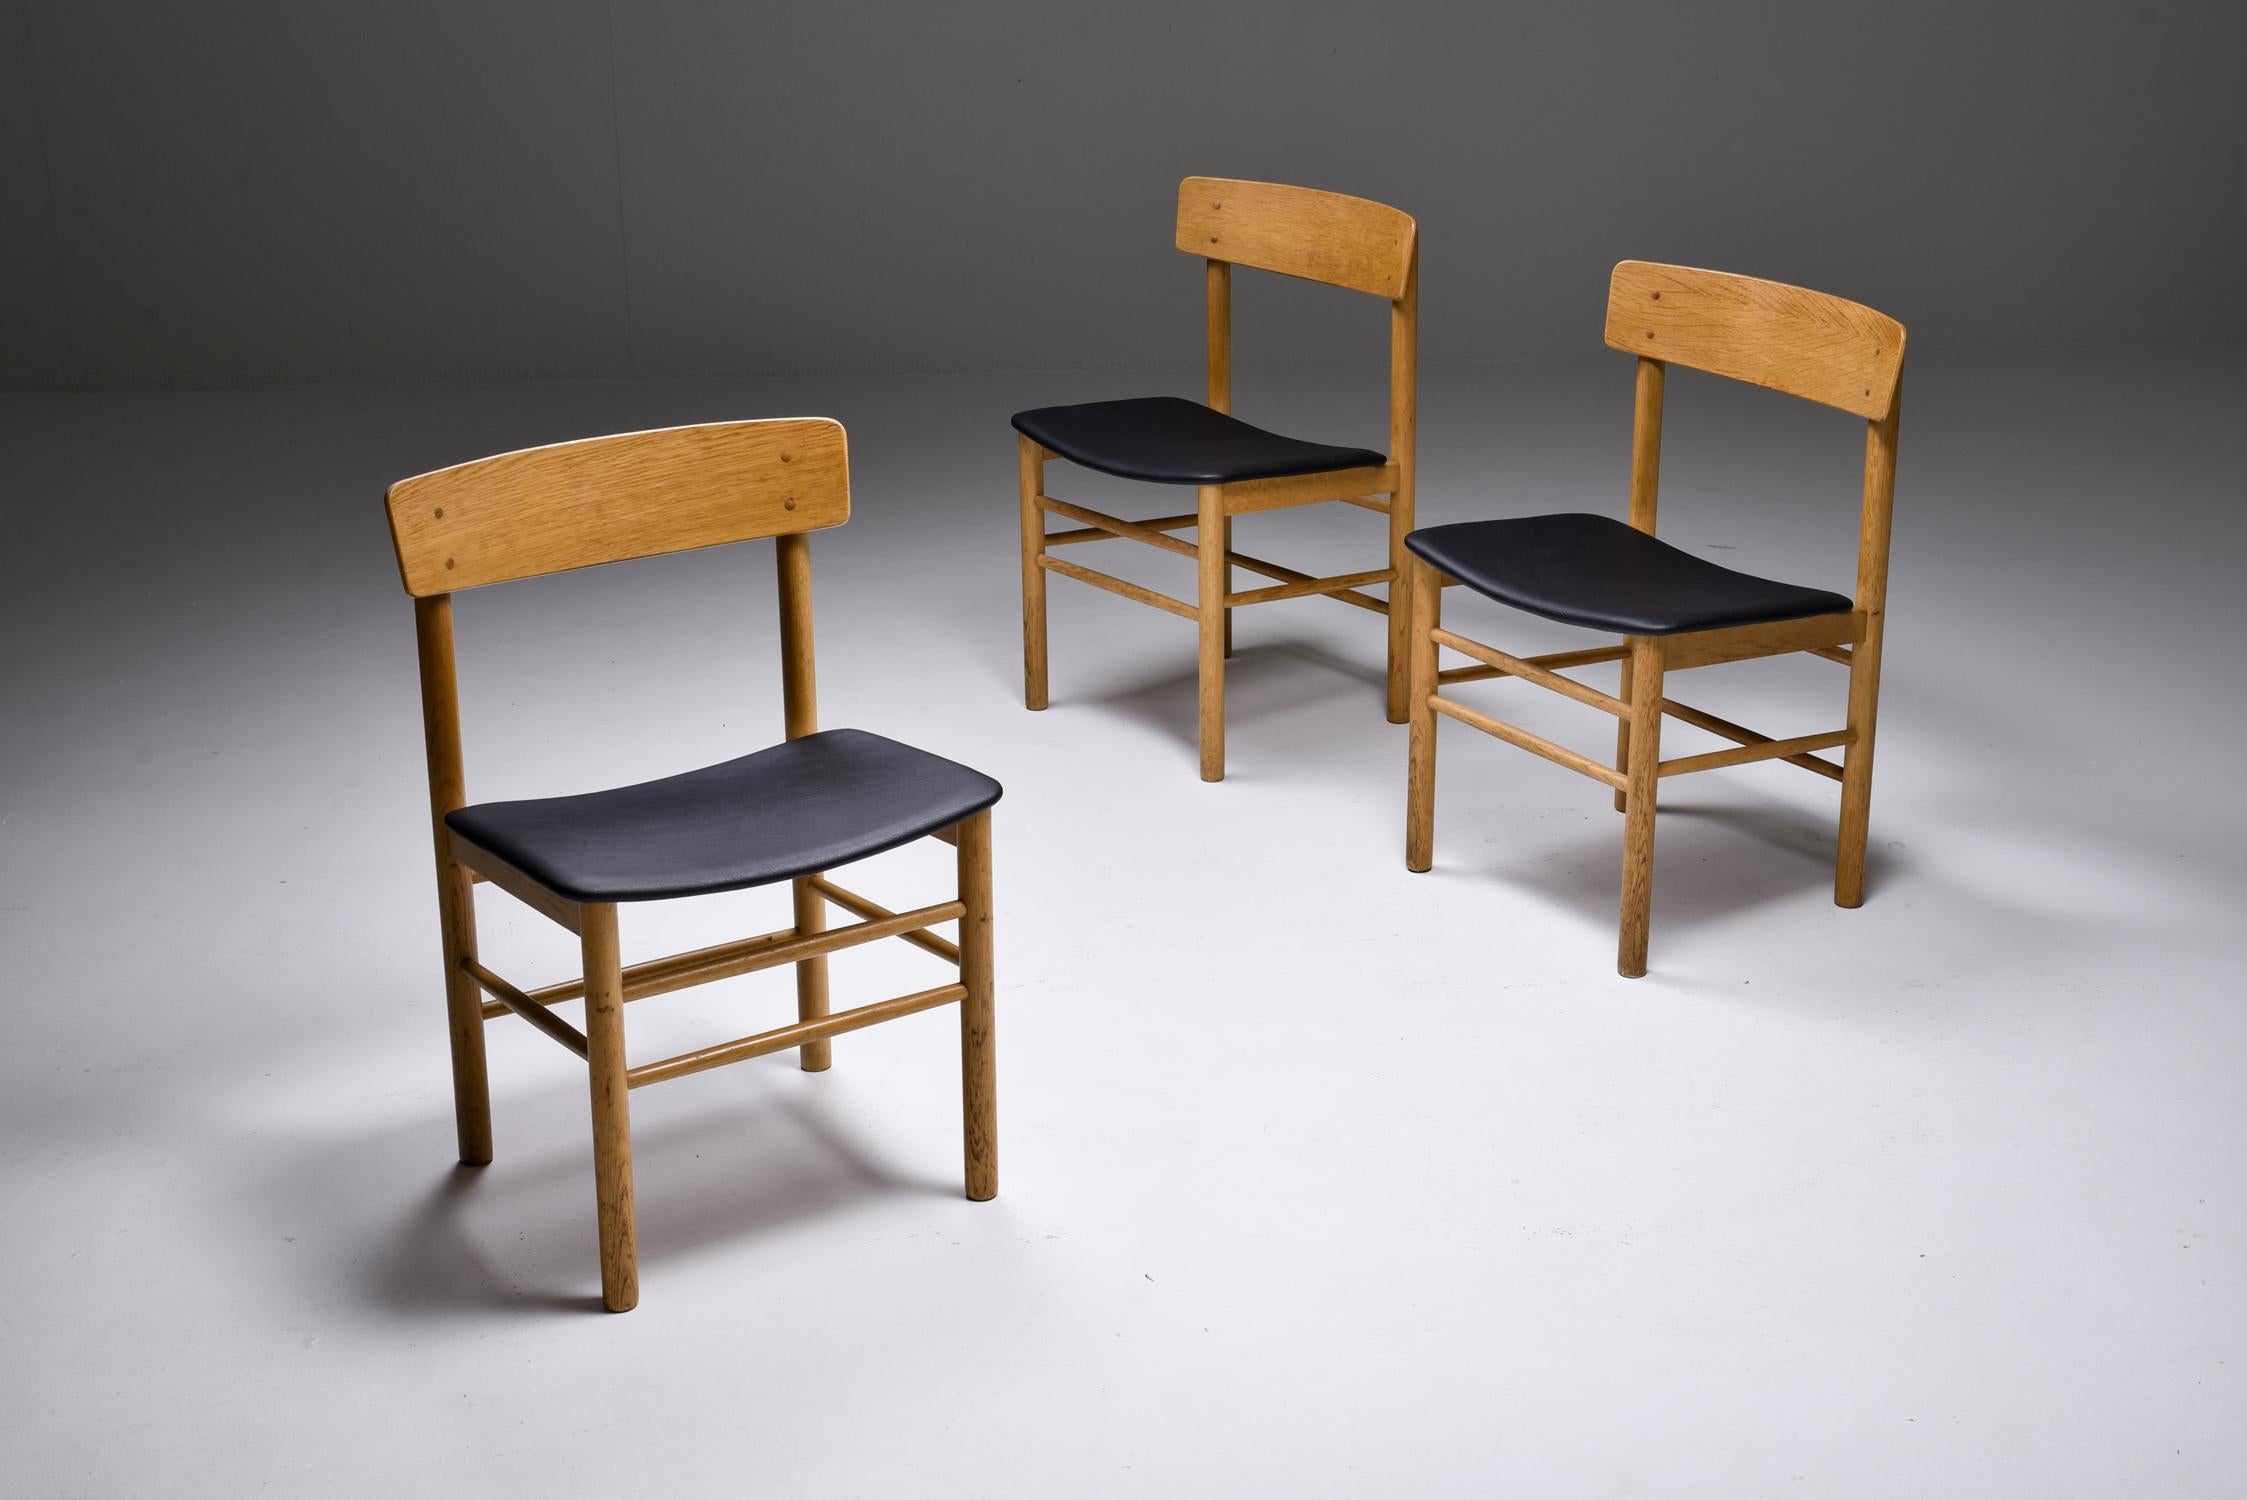 Skandinavische Moderne, Børge Mogensen, Fredericia Stølefabrik, Dänemark, 1956.

Moderne dänische Esszimmerstühle aus seifenbehandeltem Eichenholz mit Sitzflächen aus Leder. Der Stuhl Modell 3236 wurde 1956 von Børge Mogensen für die Fredericia